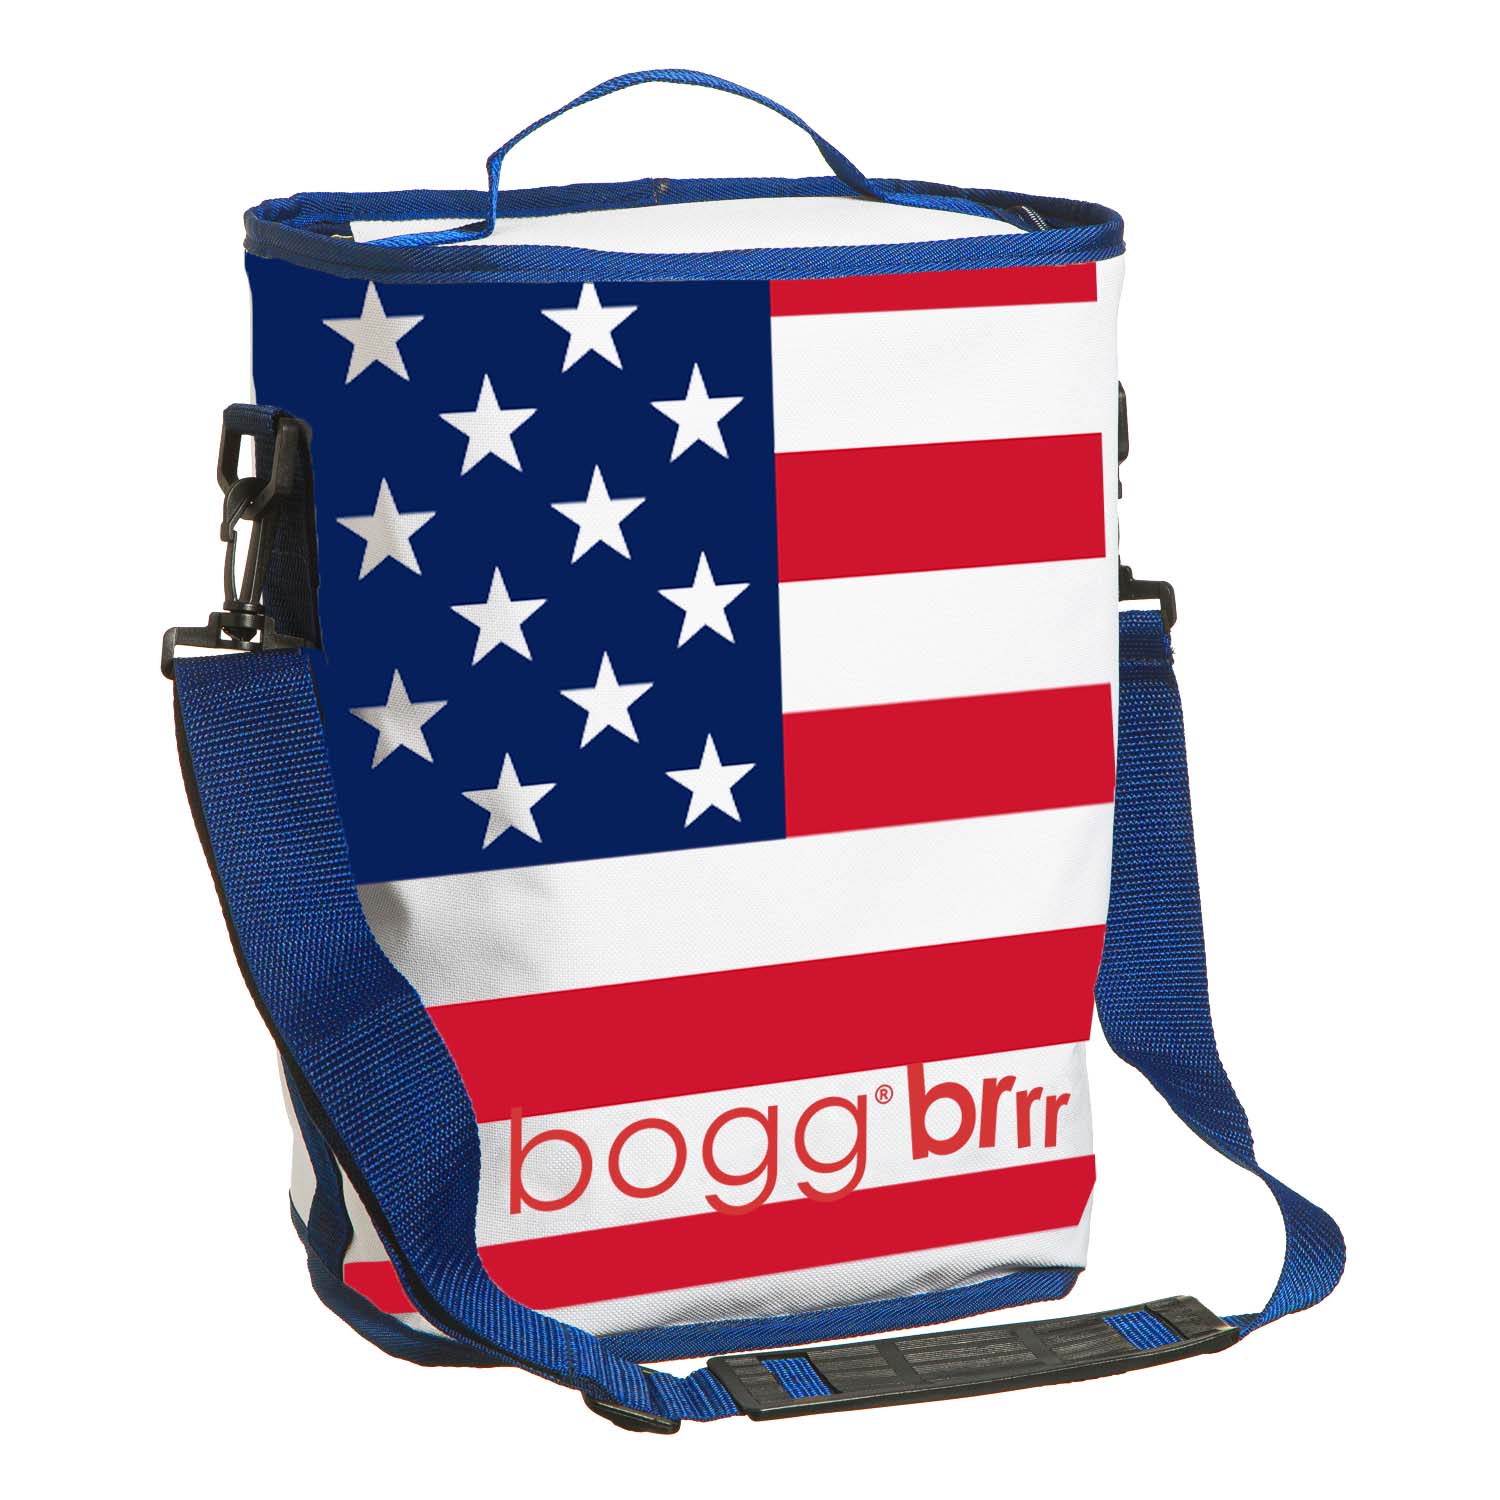 Bogg Bag Original Bogg Bag in Anchor Print